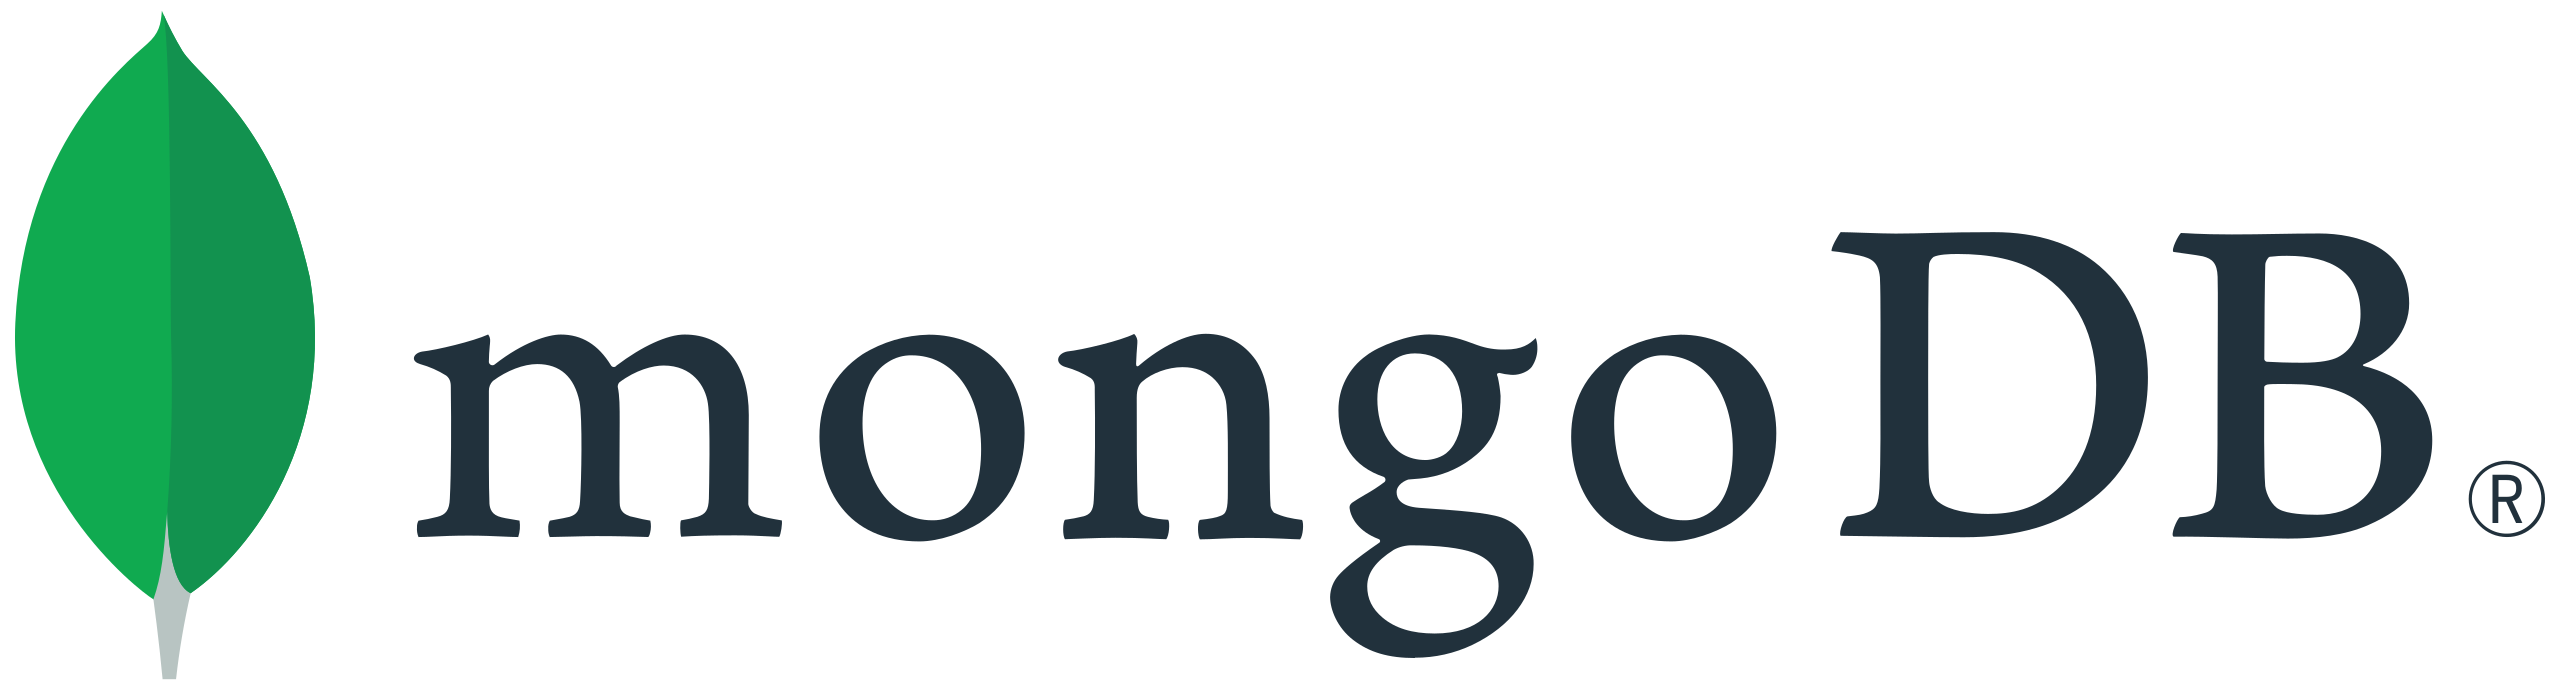 mongodb image